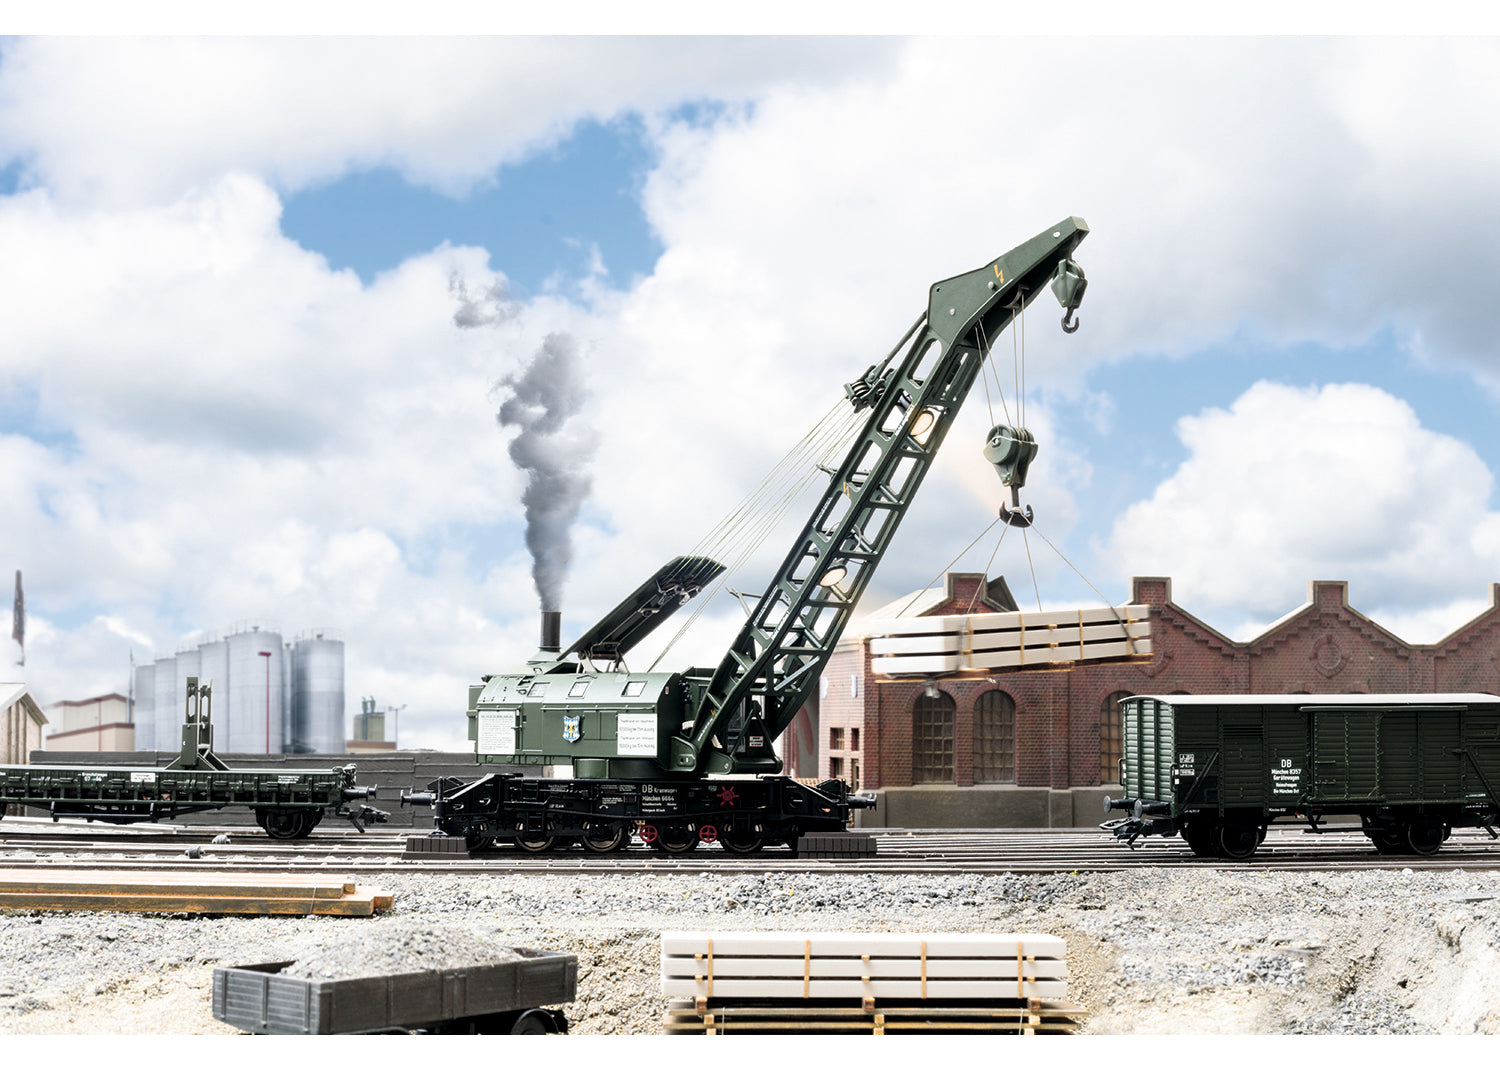 Marklin 49570 - Ardelt 57 Metric Ton Steam Crane